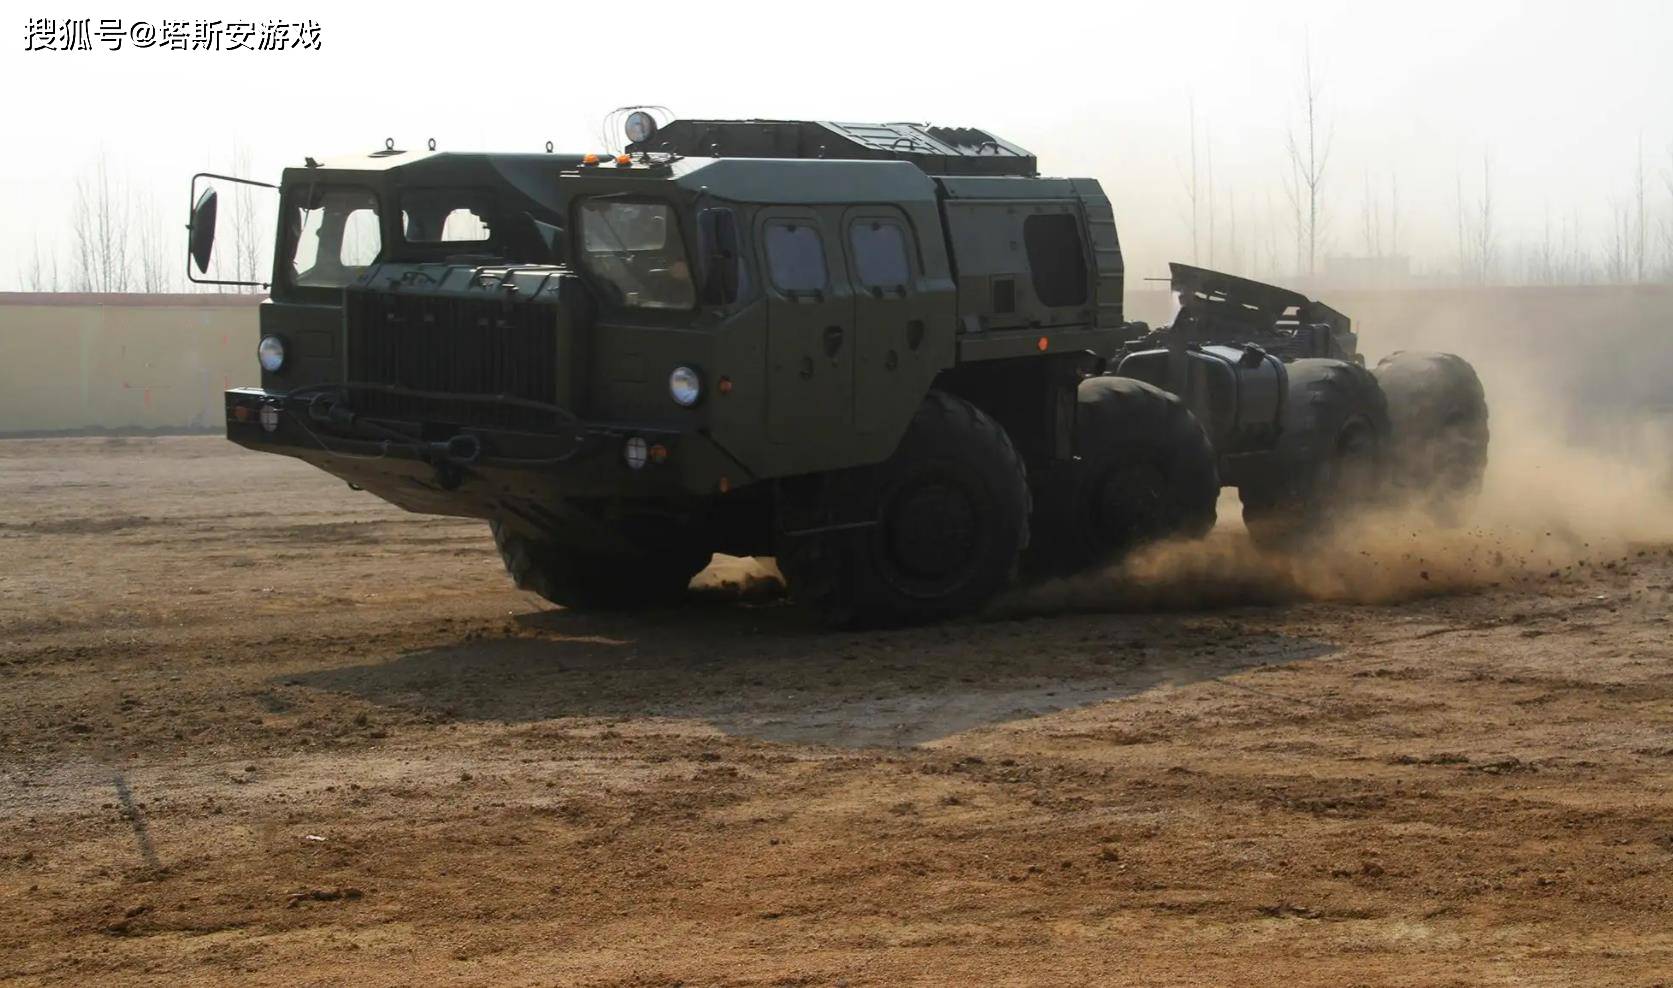 俄罗斯Kamaz-6560M装甲卡车 - 哔哩哔哩